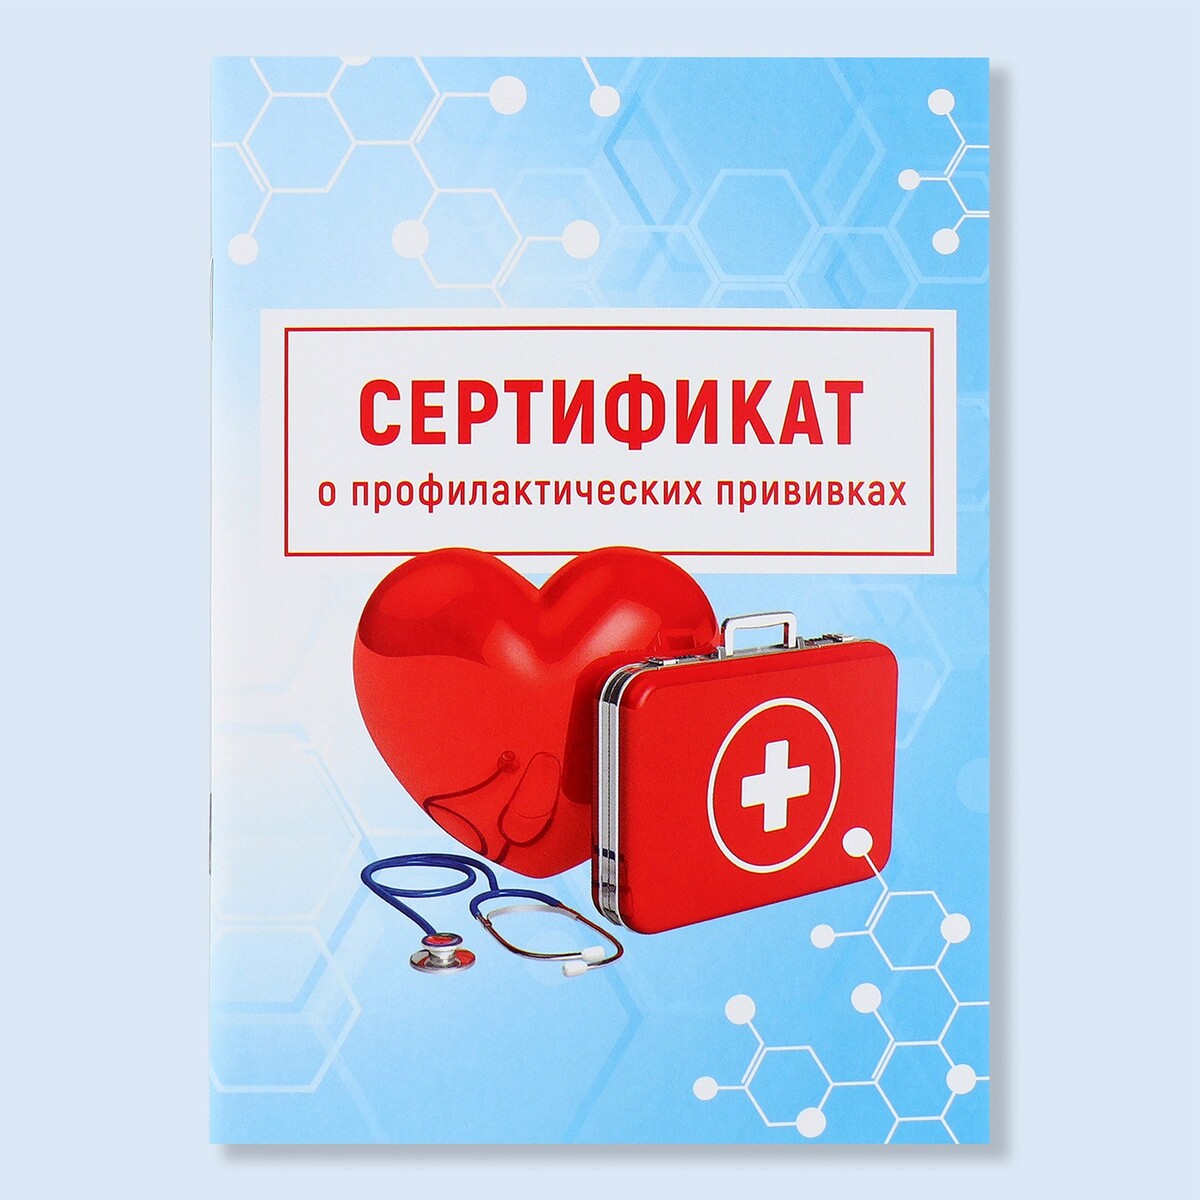 Сертификат о профилактических прививках а6, медицина, 24 страницы неврозология и психосоматическая медицина